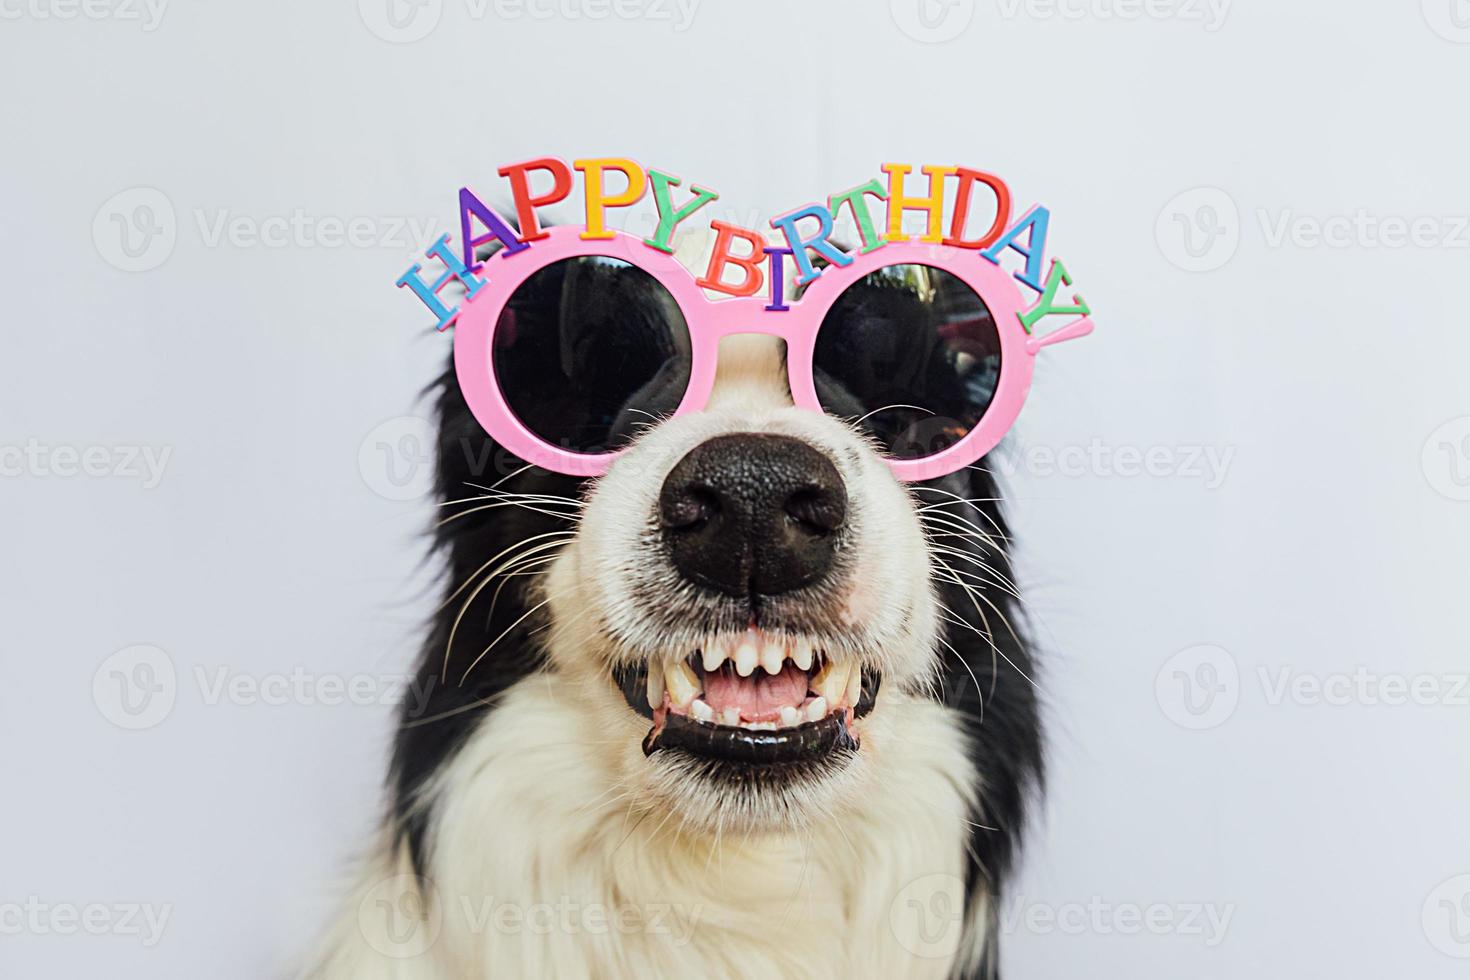 gelukkig verjaardagsfeestje concept. grappige schattige puppy hond border collie dragen verjaardag dwaze hoed geïsoleerd op een witte achtergrond. huisdier hond op verjaardag. foto